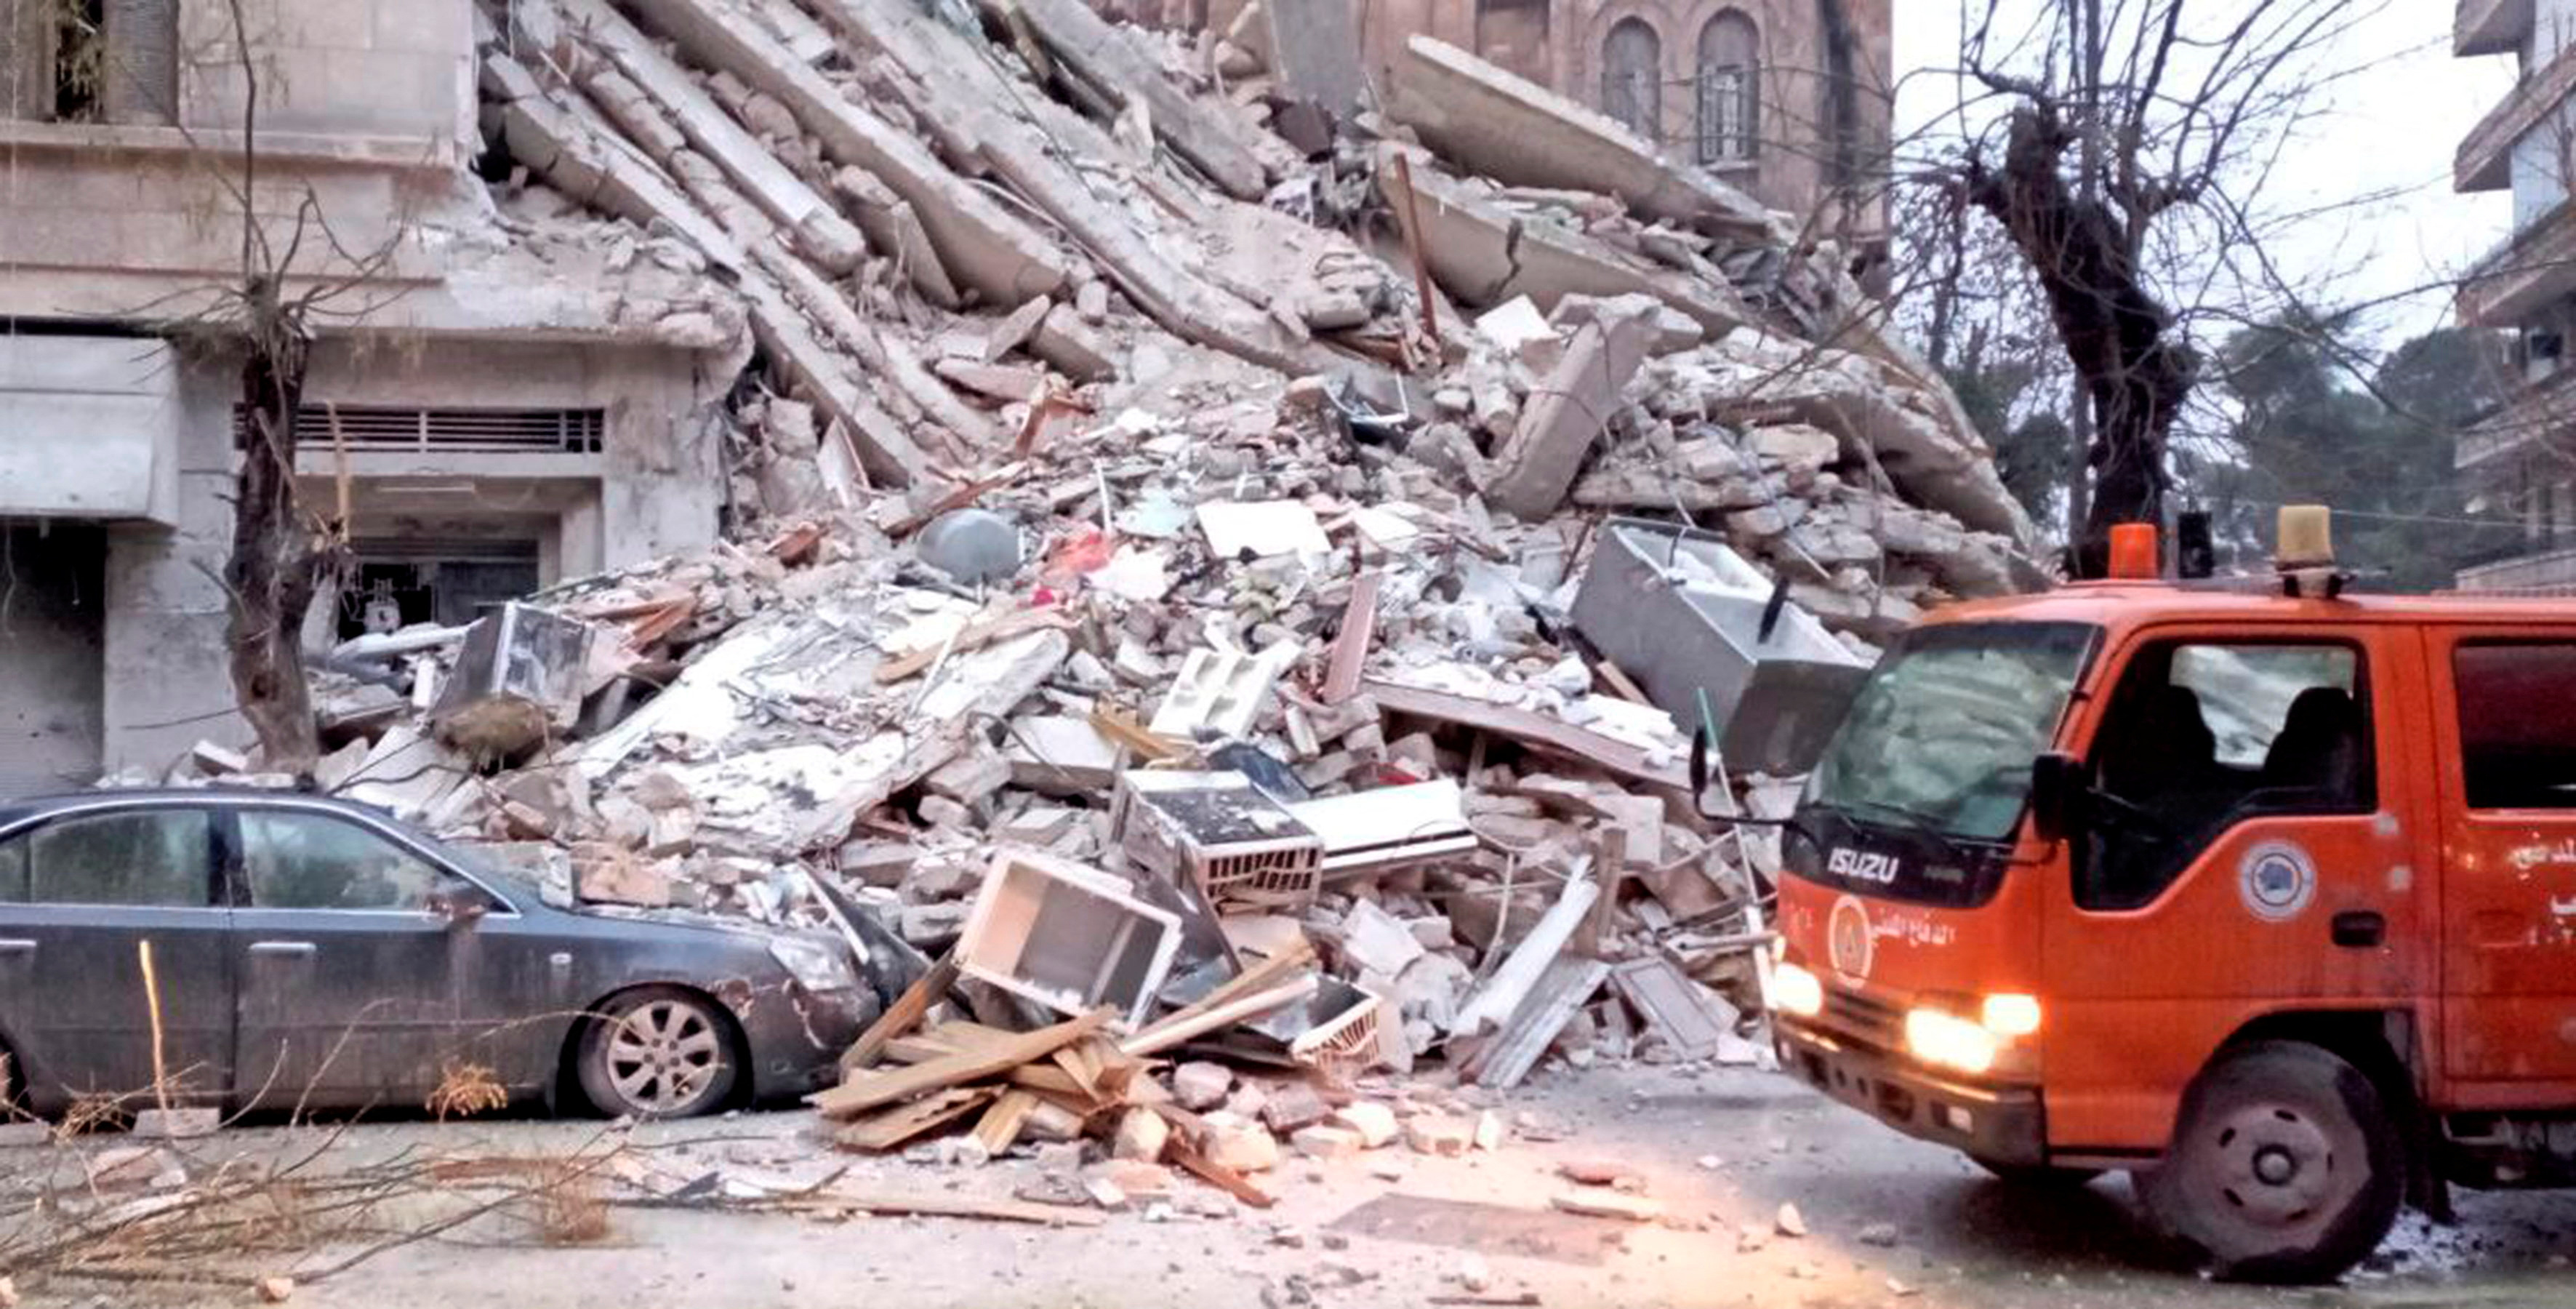 Terremoto de magnitude 7,8 que atingiu a Turquia e Síria também foi sentido em outros países. Epicentro dos tremores foi registrado entre duas cidades turcas